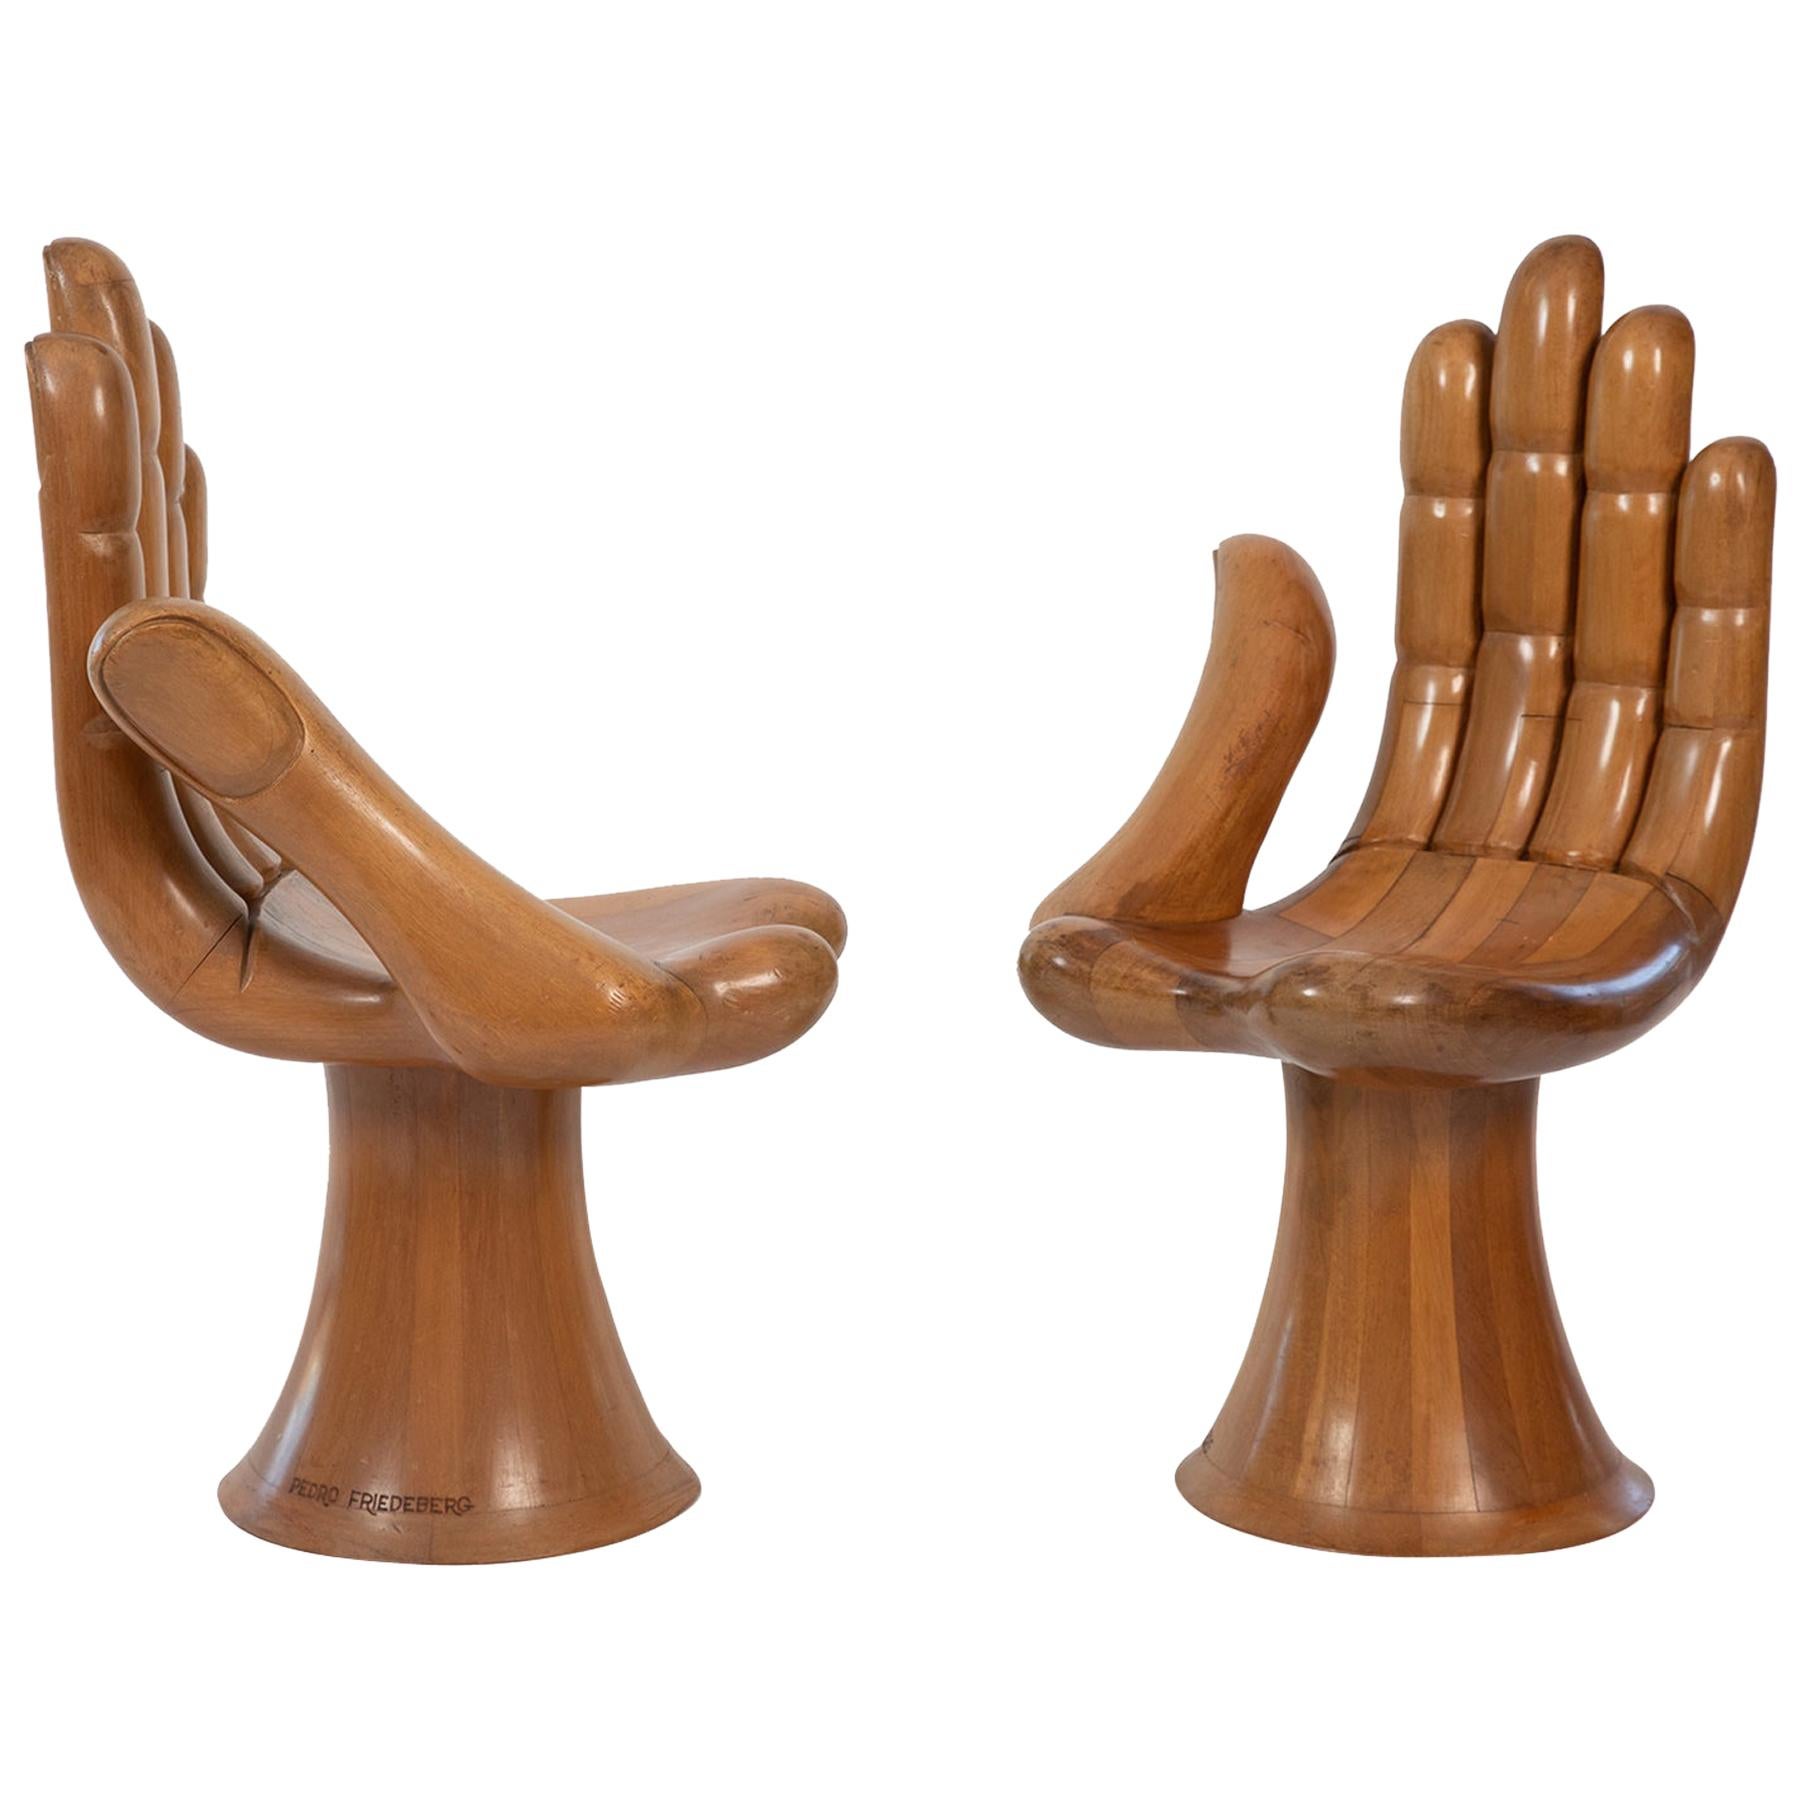 Pedro Friedeberg Hand Chairs